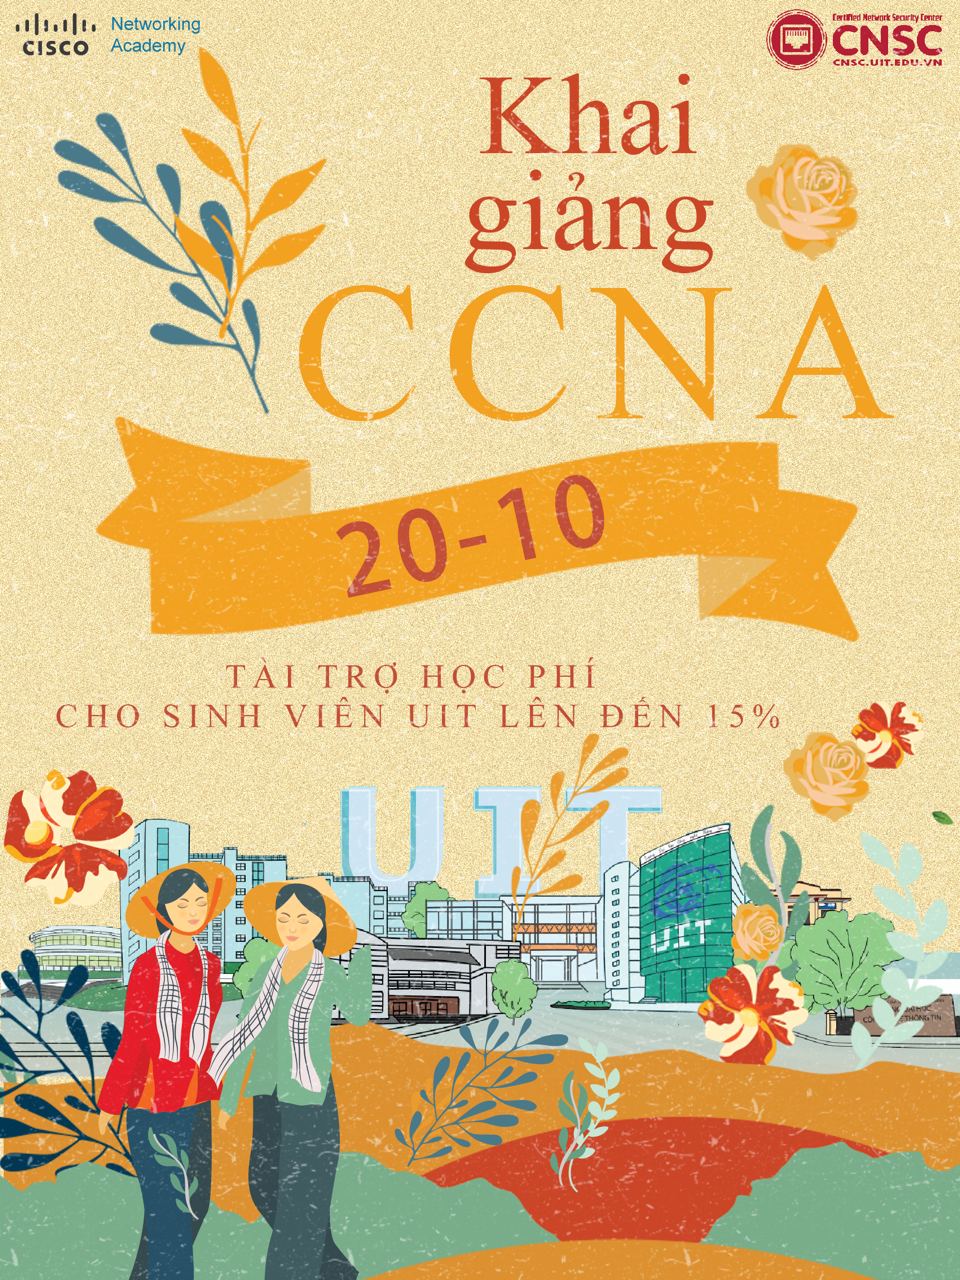 Khai giảng các lớp CCNA – Học viện mạng Cisco CNSC vào 03/11/2020